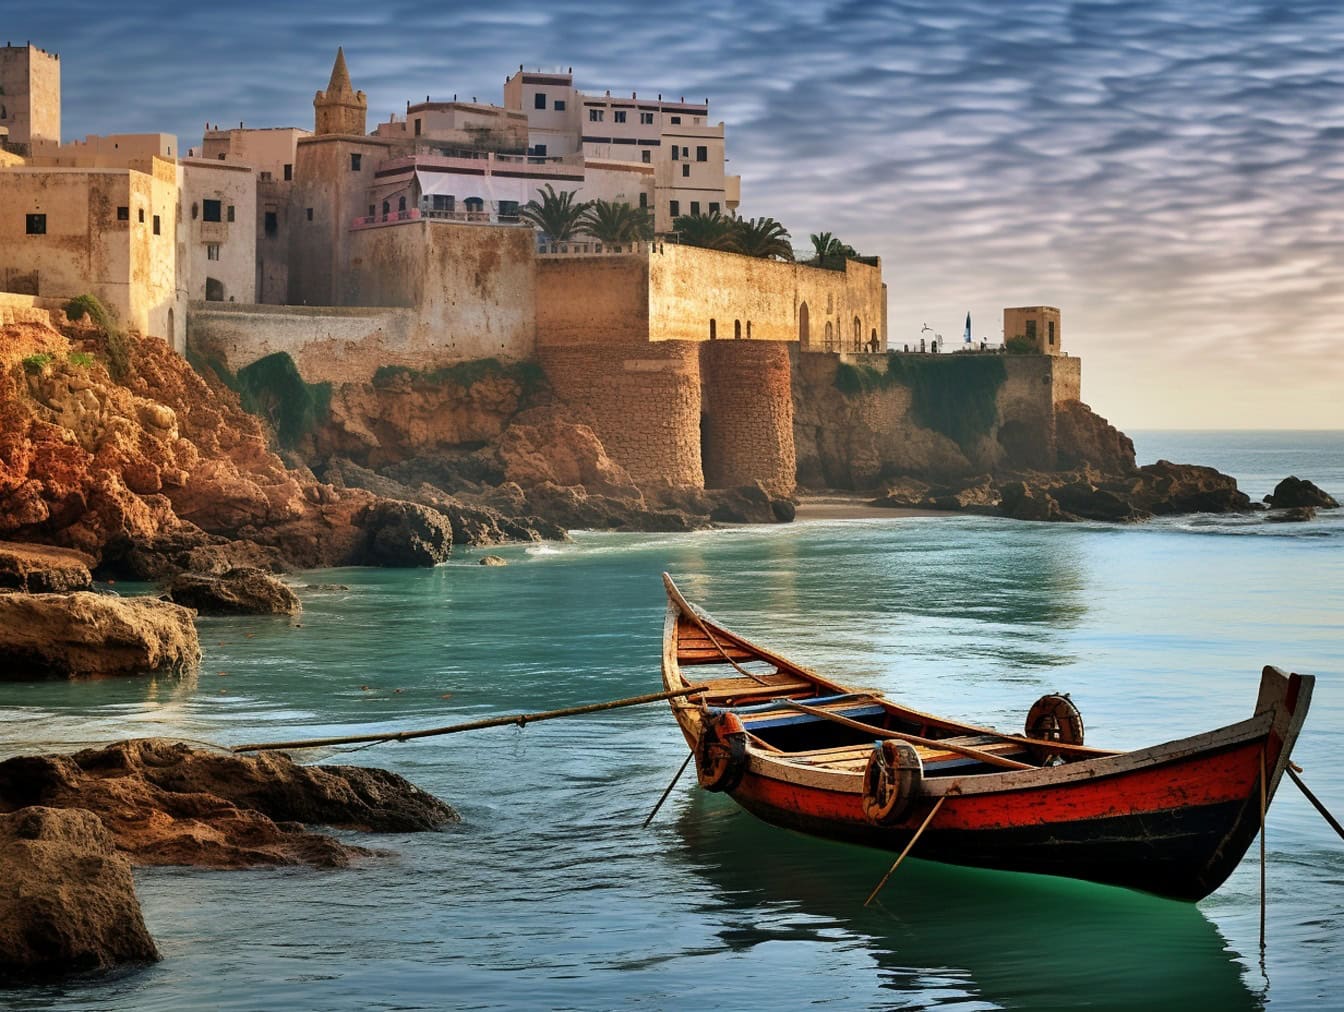 Barca di legno sulla costa del Marocco con l’antica città medievale di Rabat sullo sfondo